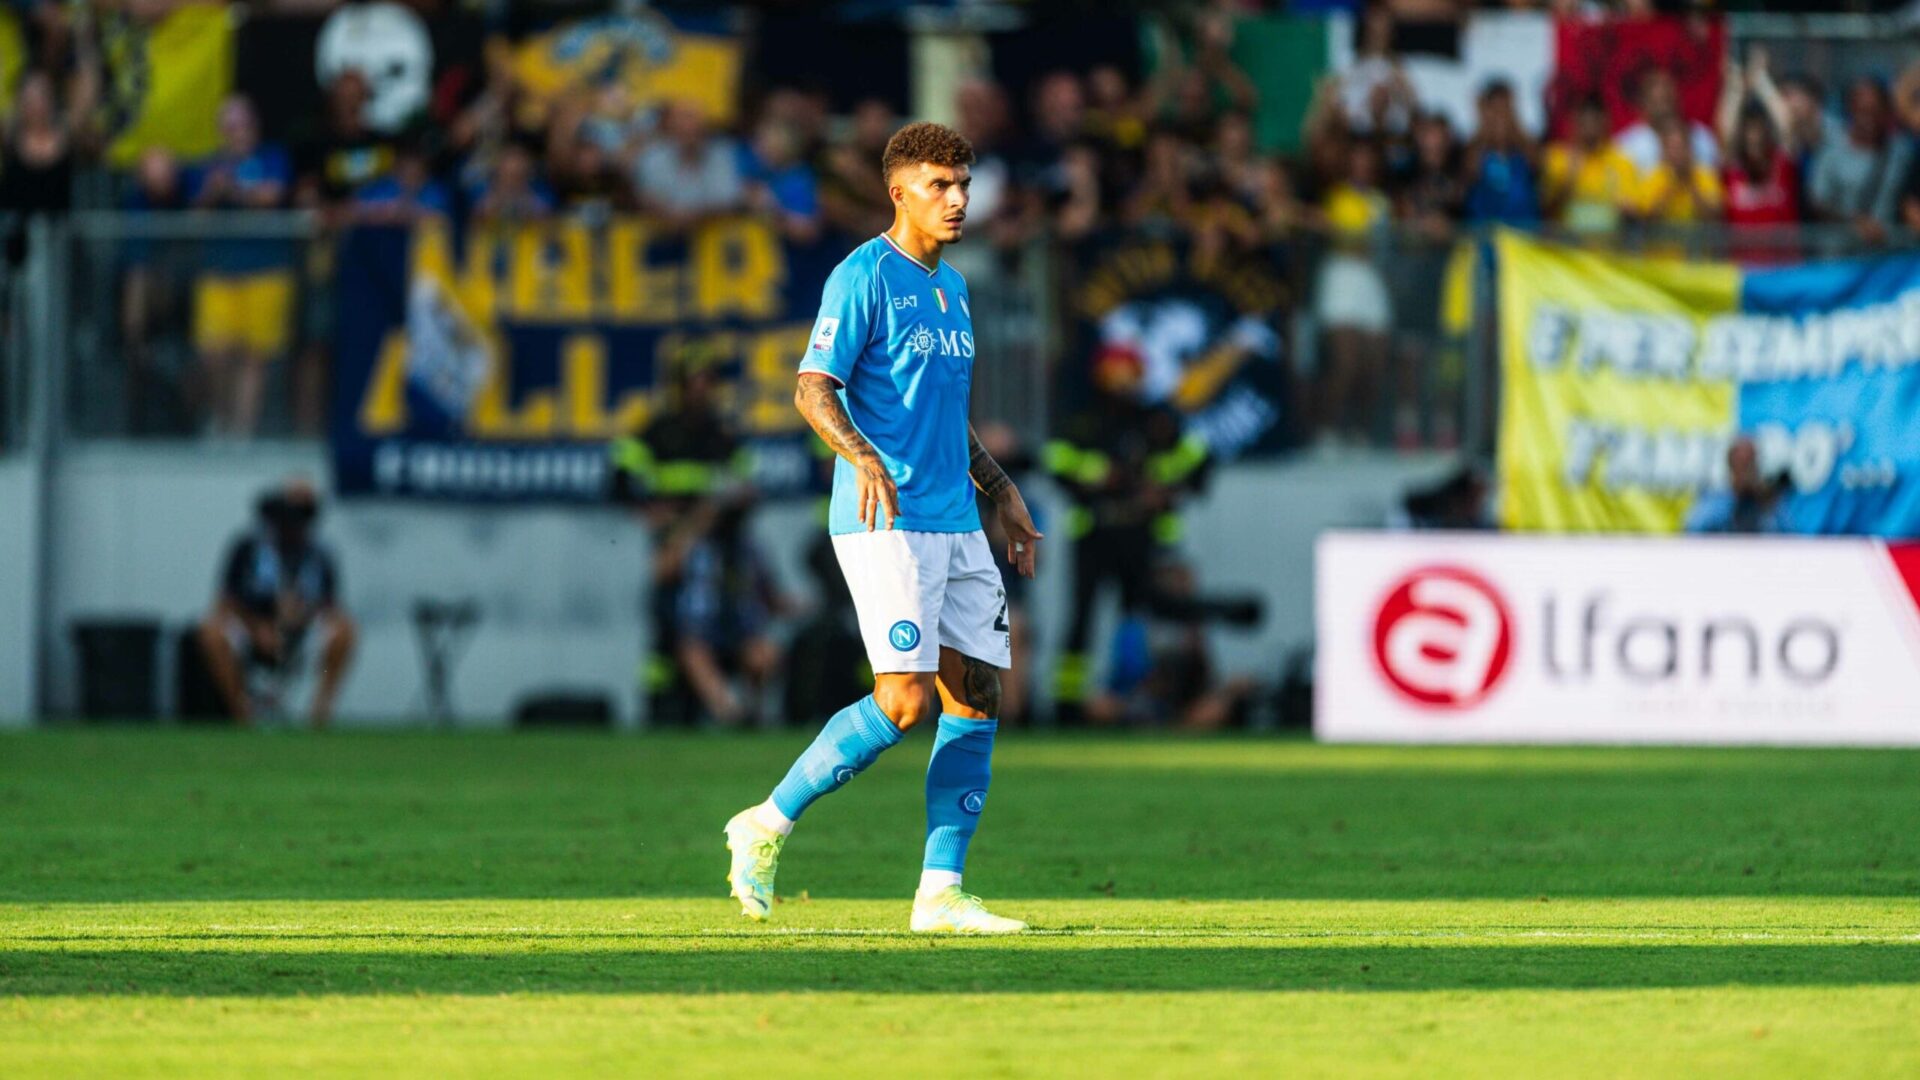 Frosinone-Società Sportiva Calcio Napoli 1-3: le pagelle